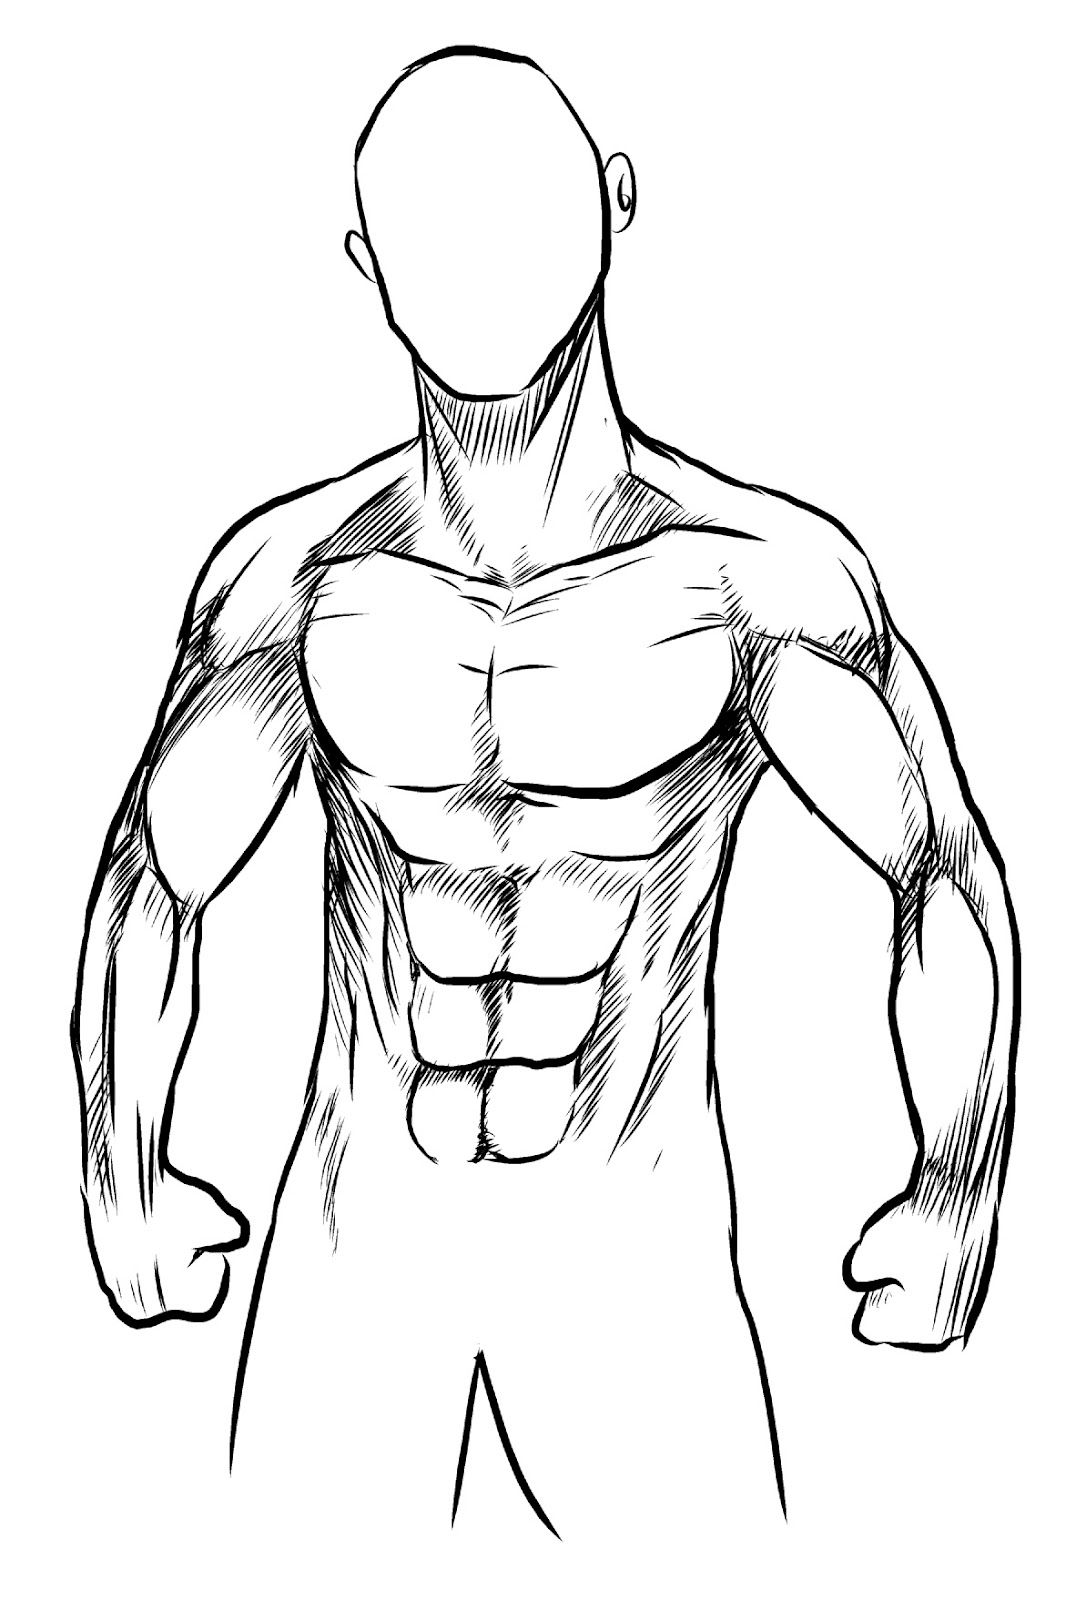 How To Draw A Human Body Sketch imgAbigail